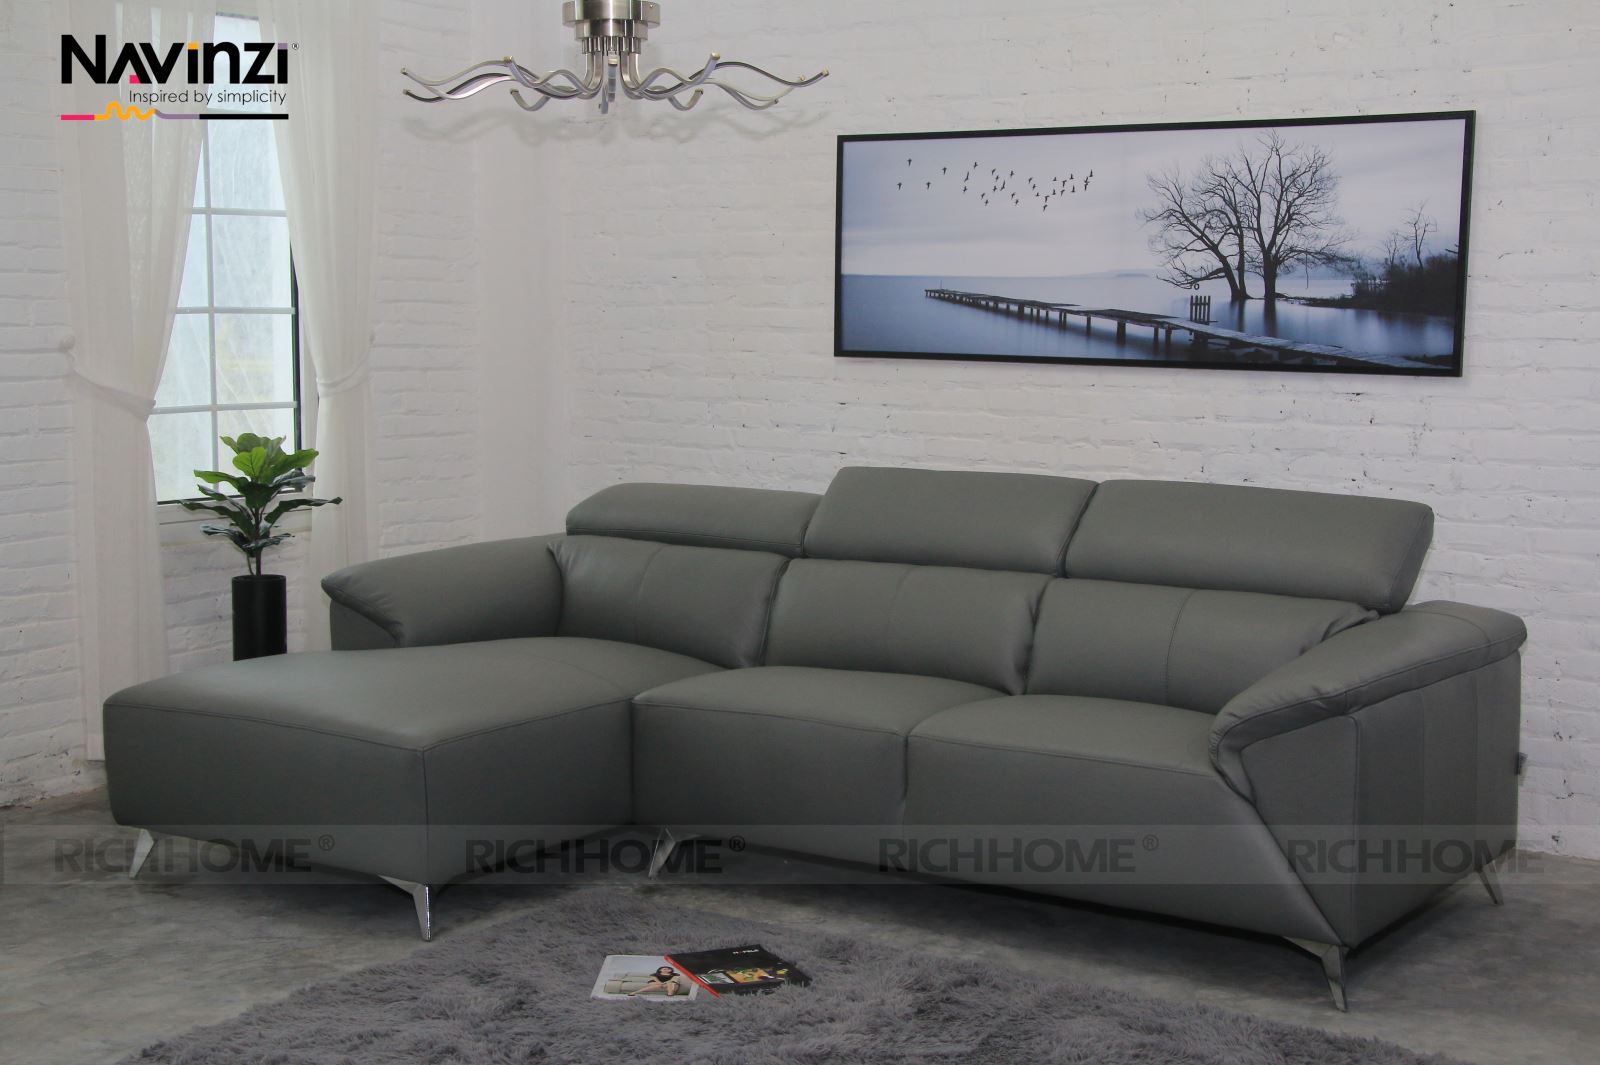 Top các mẫu ghế sofa đẹp cho phòng khách nhỏ bán chạy nhất - Ảnh 4